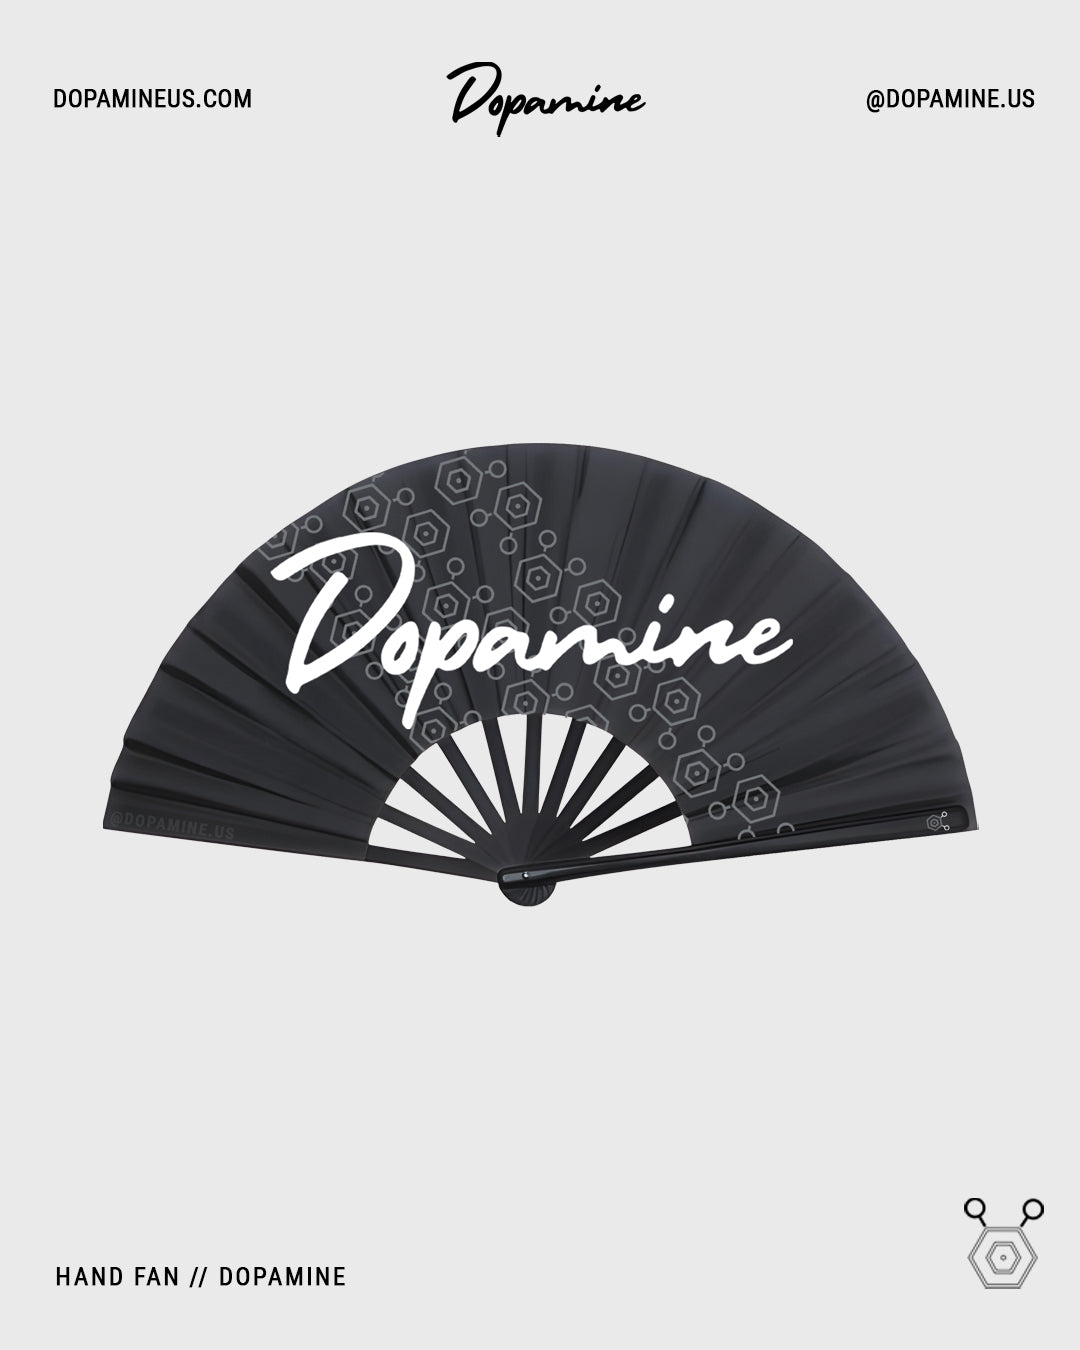 Dopamine fan